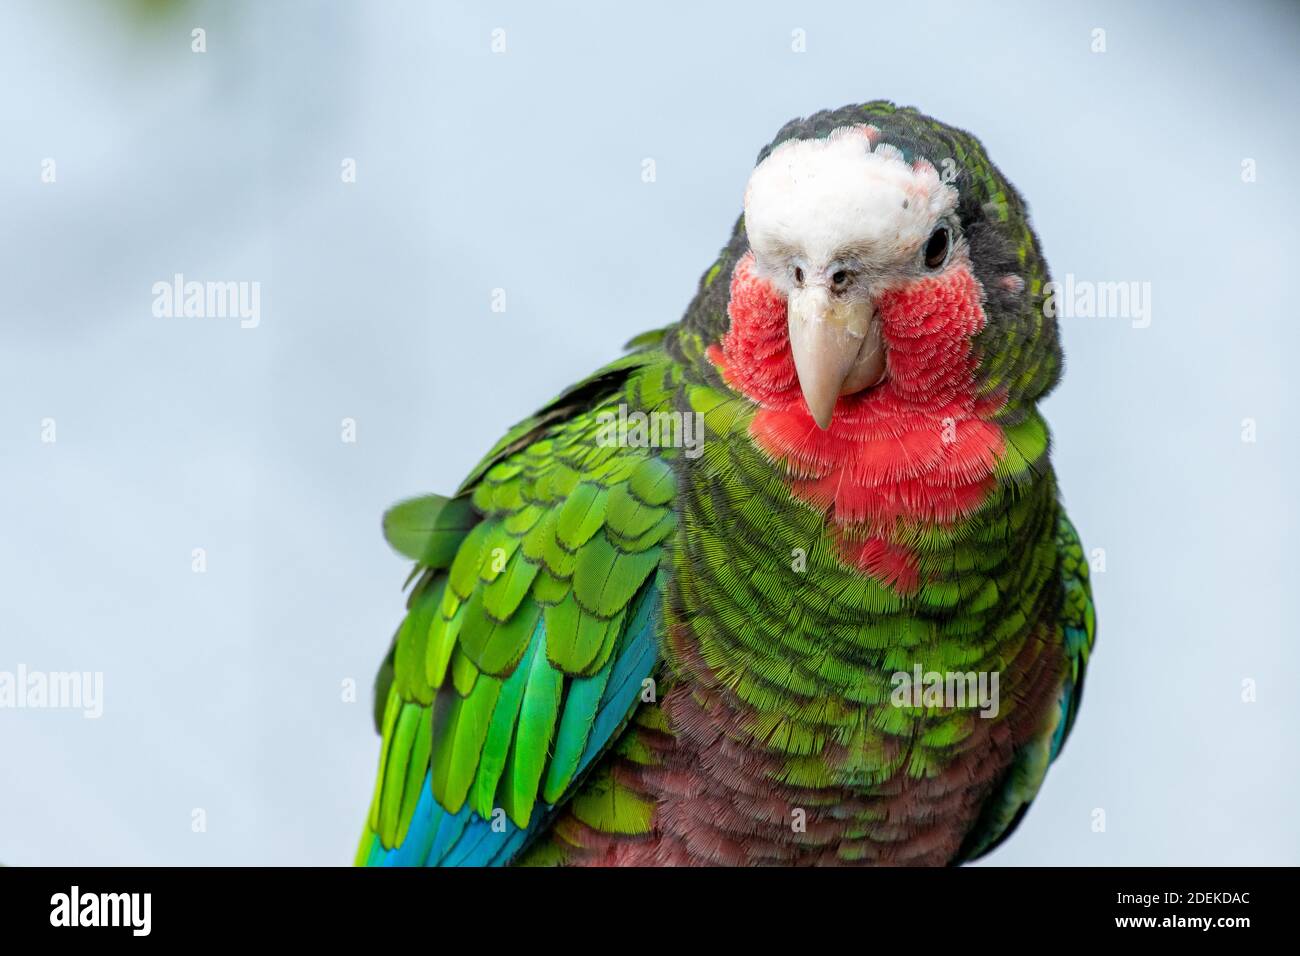 Ein kubanischer amazonas (Amazona leucocephala), auch bekannt als kubanischer Papagei oder der Rosenkehlpapagei, ist ein grüner Papagei, der in Wäldern und Trockenwäldern gefunden wird Stockfoto